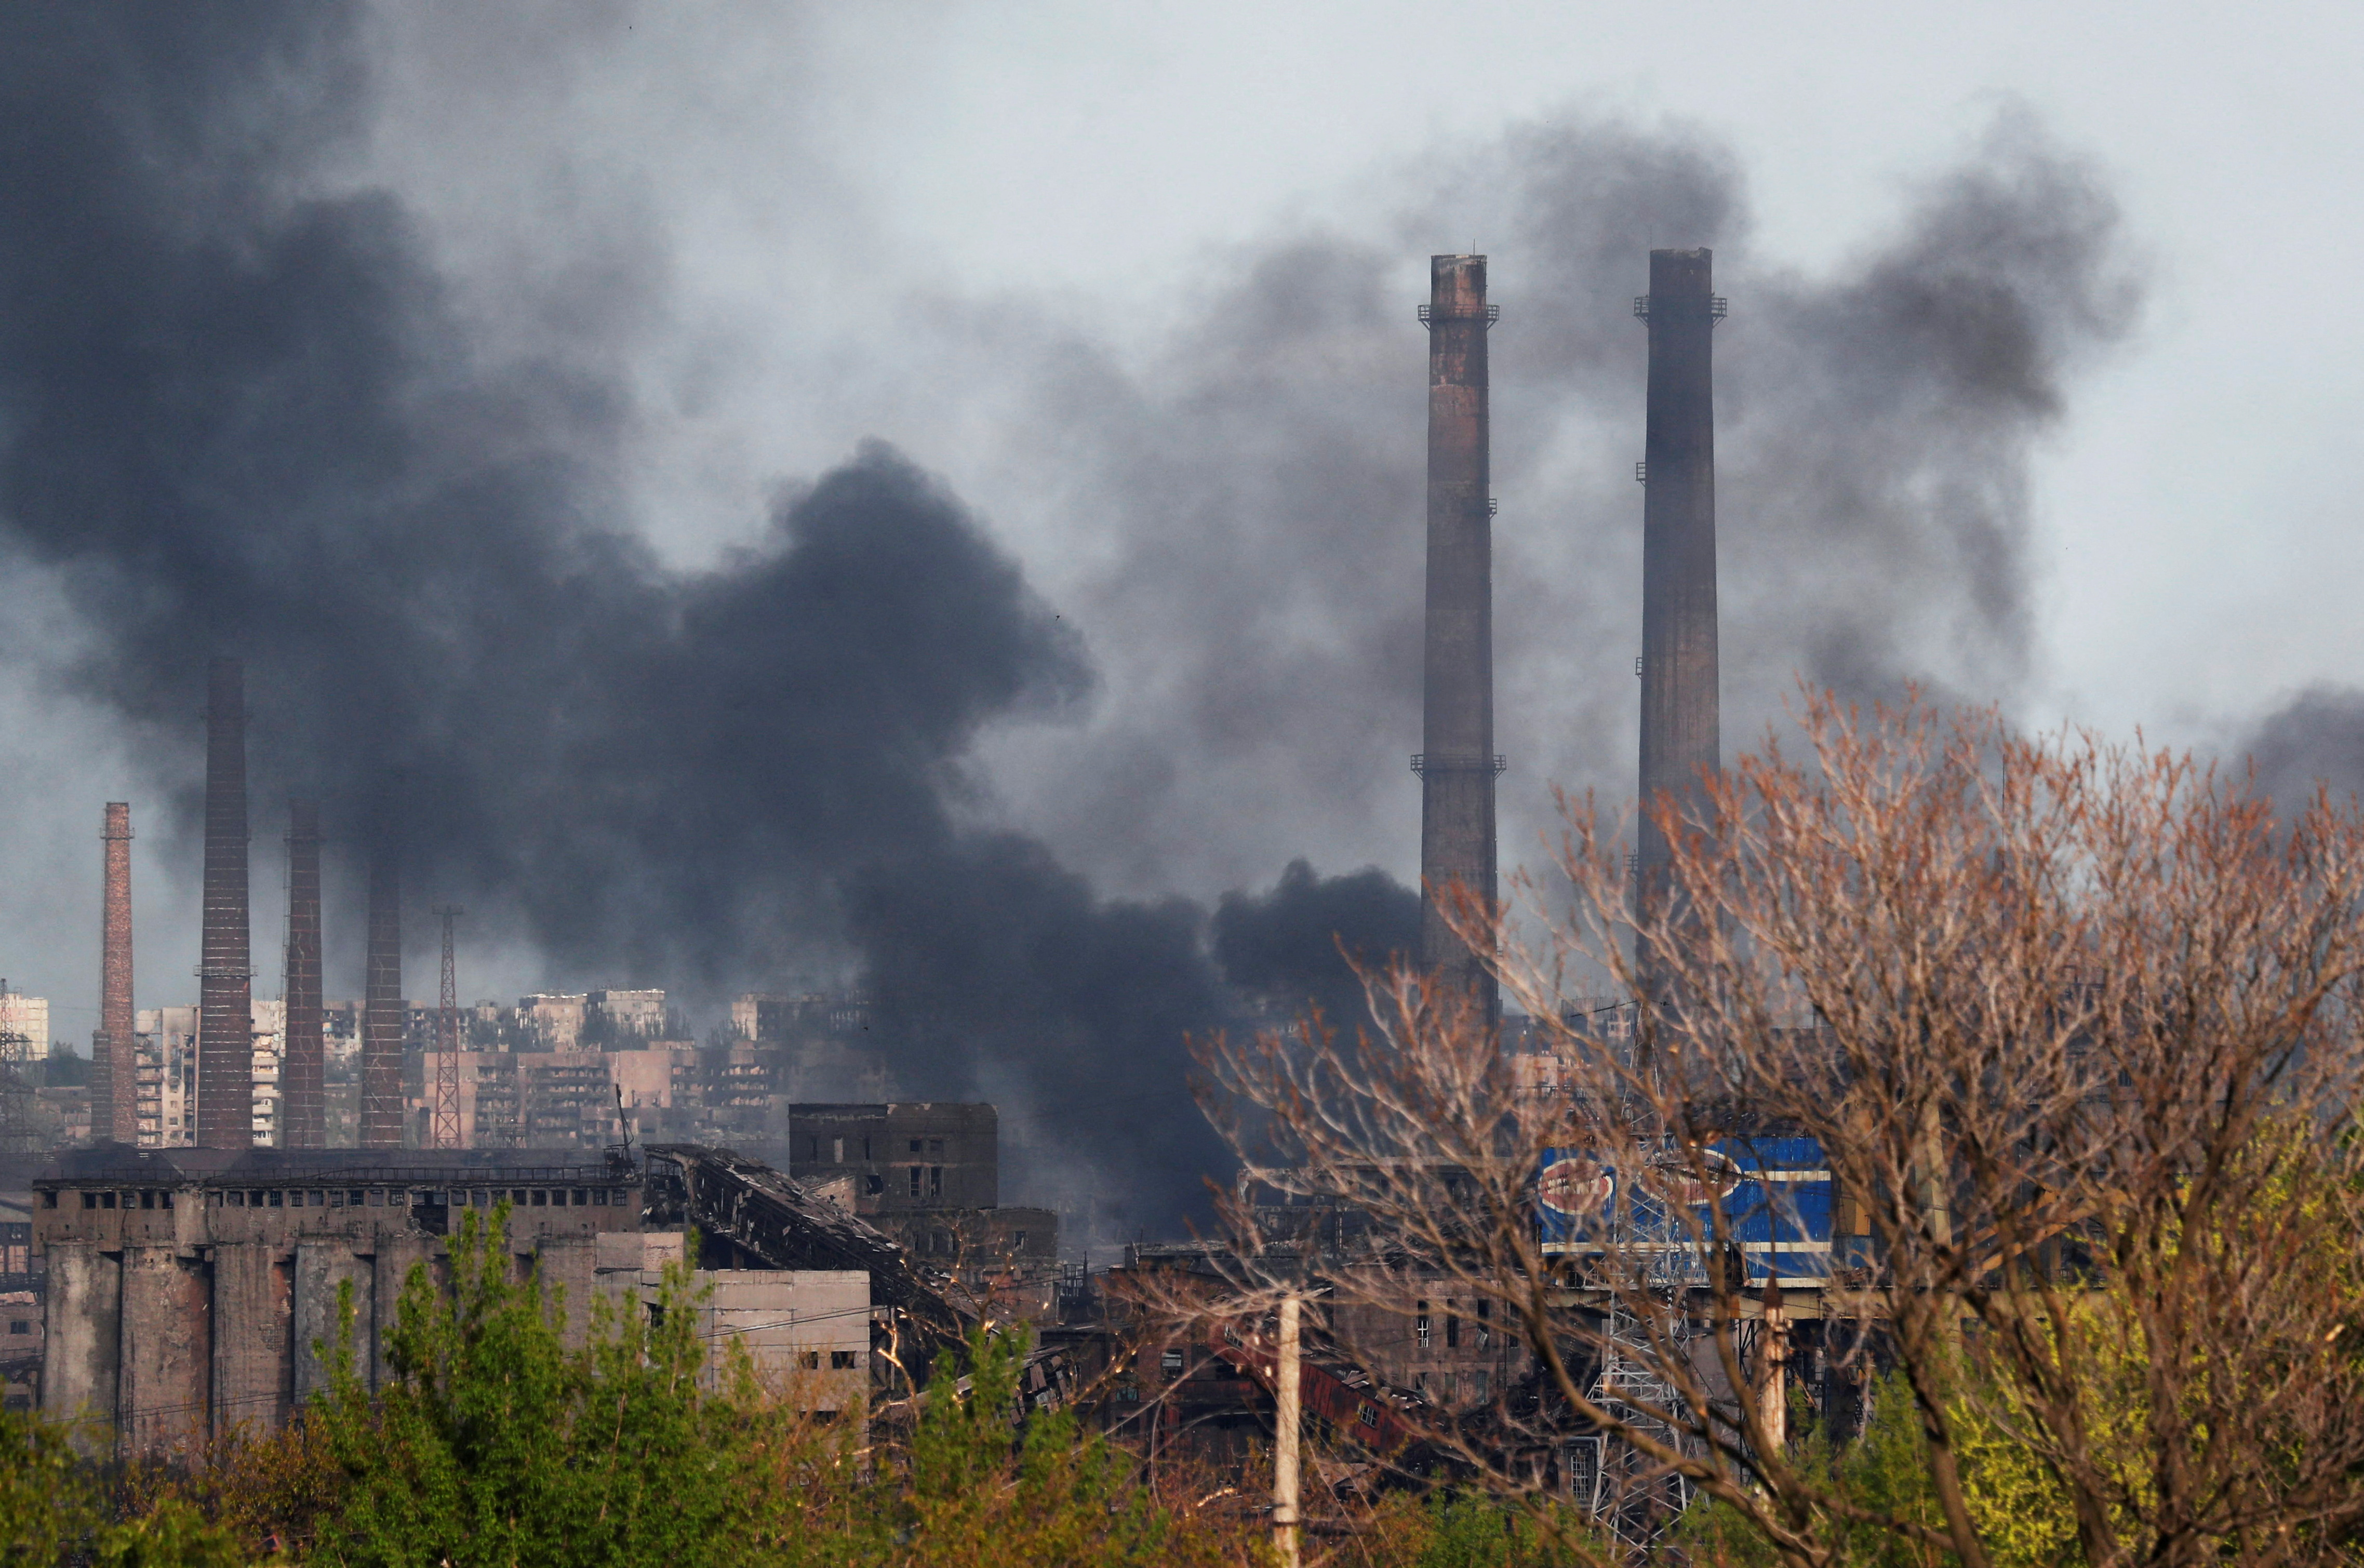 FOTO DE ARCHIVO: El humo se eleva sobre una planta de Azovstal Iron and Steel Works durante el conflicto entre Ucrania y Rusia en la ciudad portuaria sureña de Mariupol, Ucrania, el 2 de mayo de 2022. REUTERS/Alexander Ermochenko/Foto de archivo